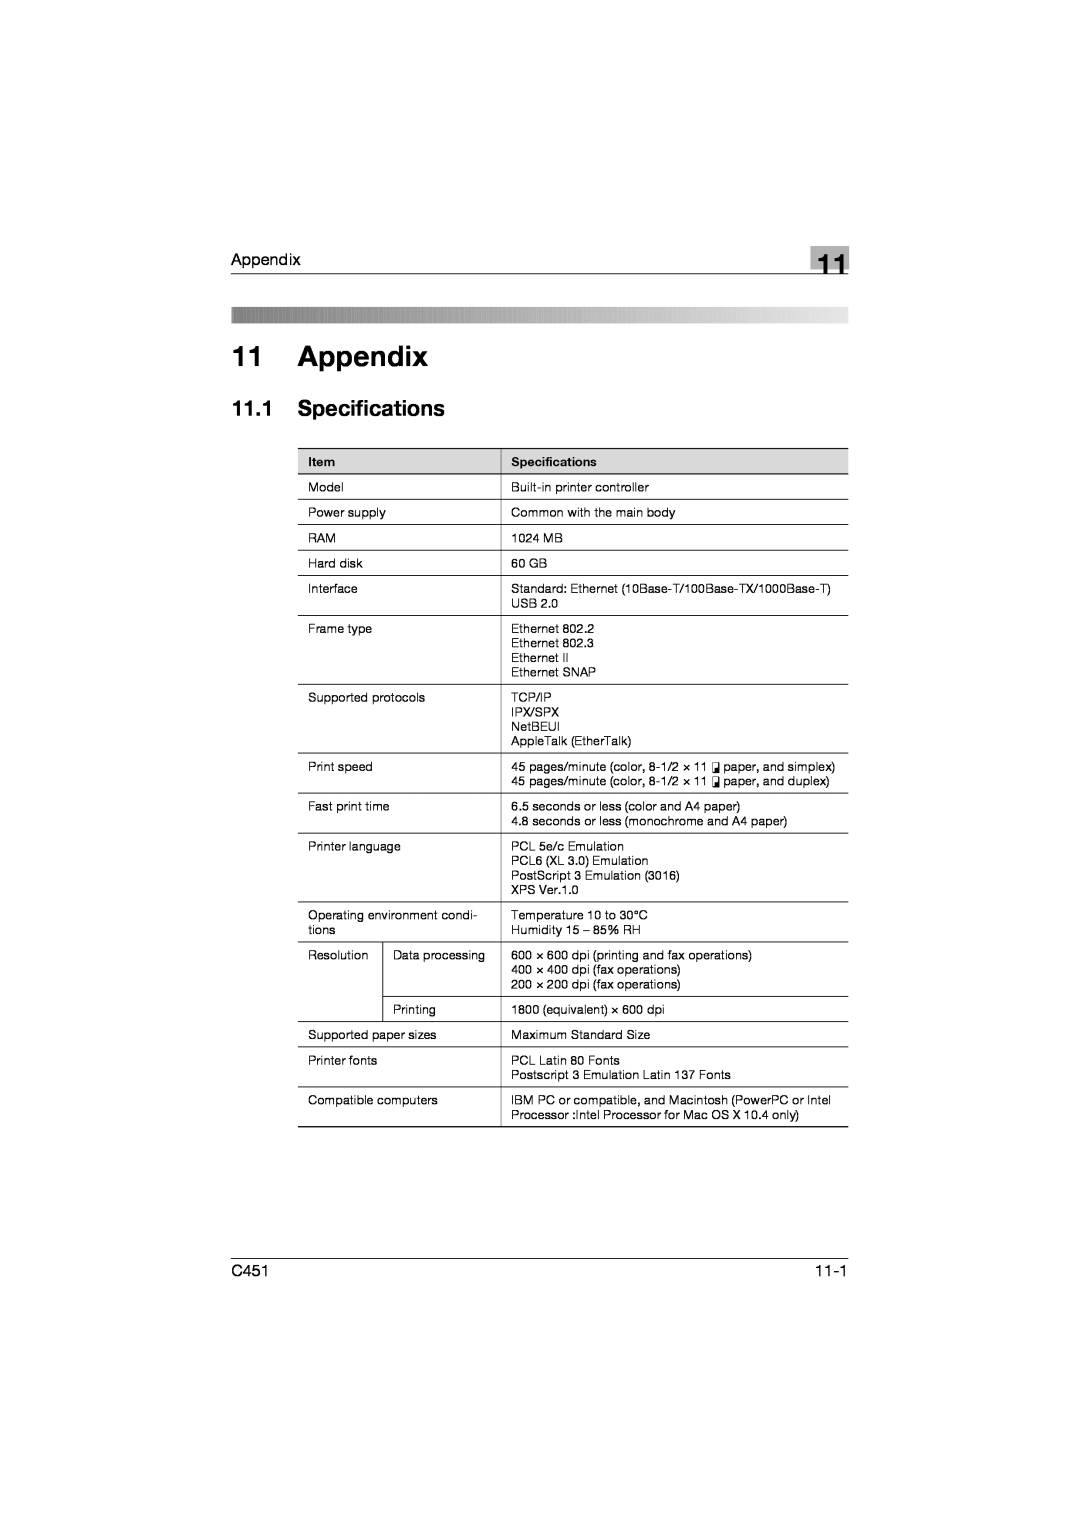 Konica Minolta C451 manual Appendix, 11.1Specifications 